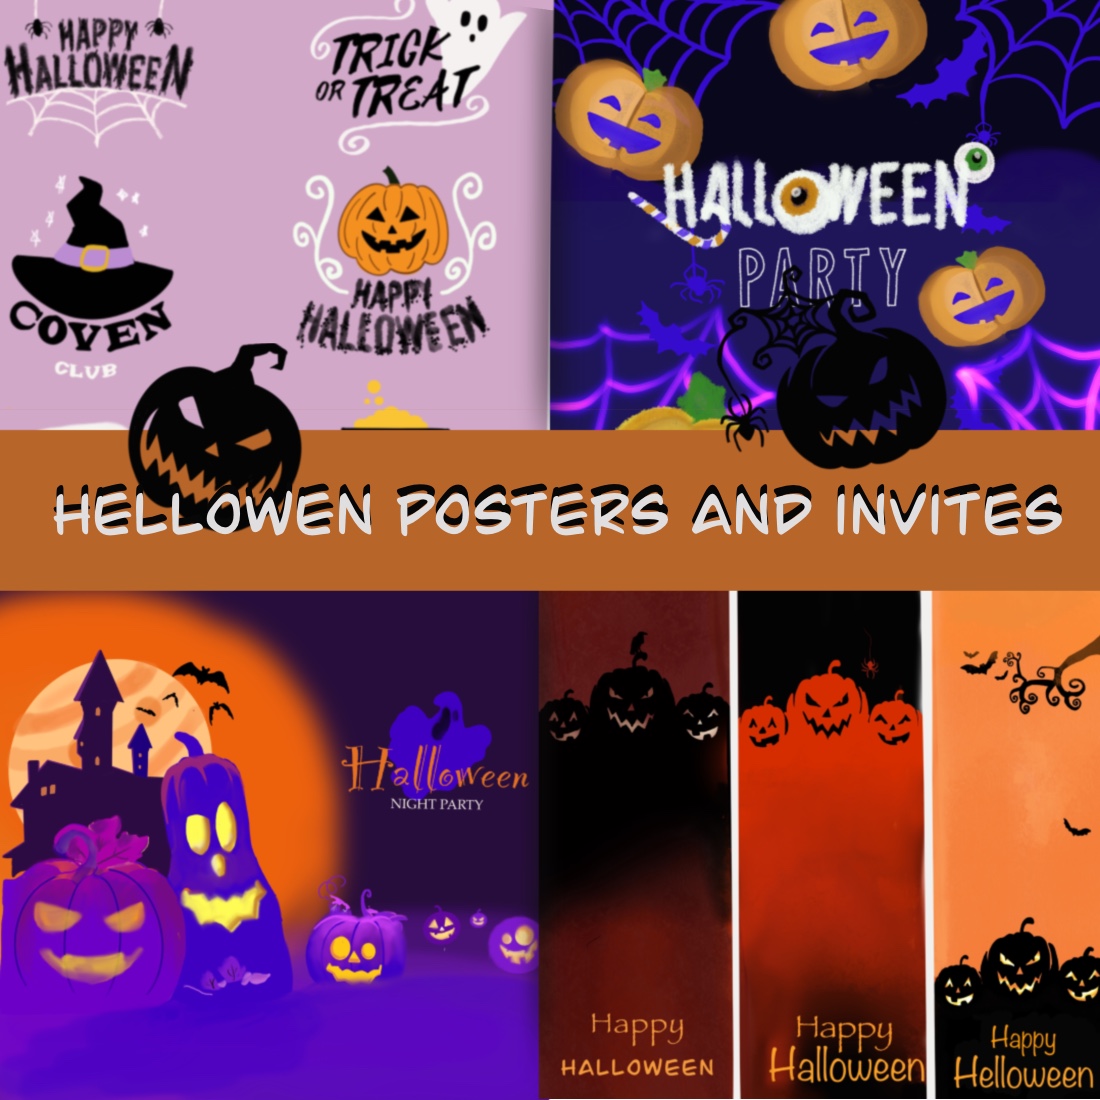 Постеры, приглашения, тексты для Helloween cover image.